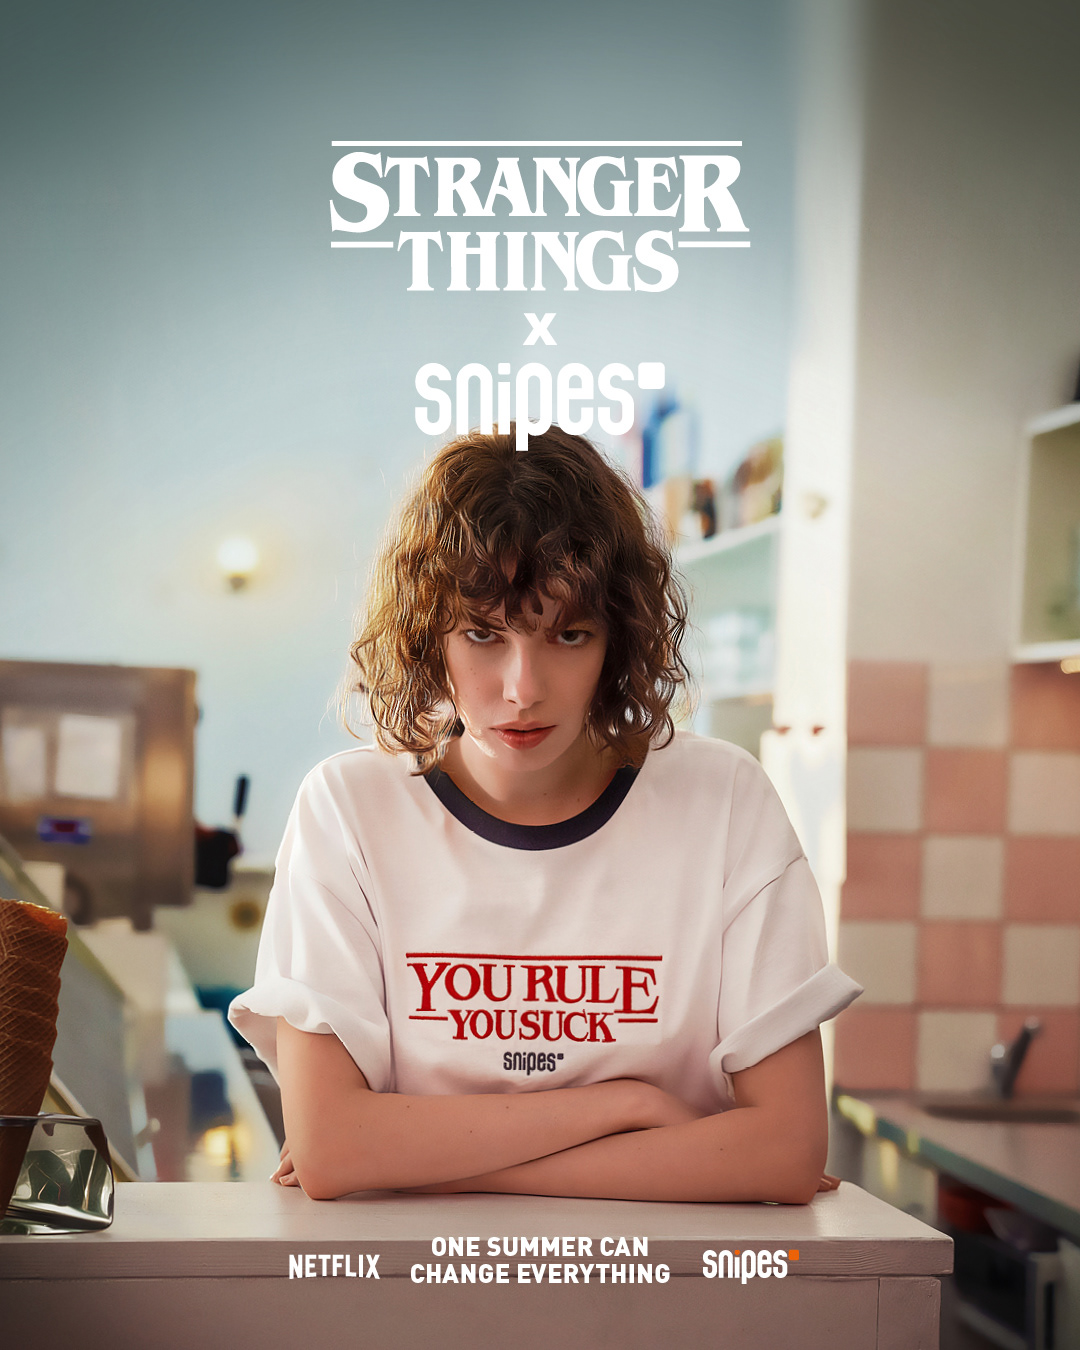 StrangerThings Snipes stranger things strangerThings3 Netflix Advertising  clothes brand series